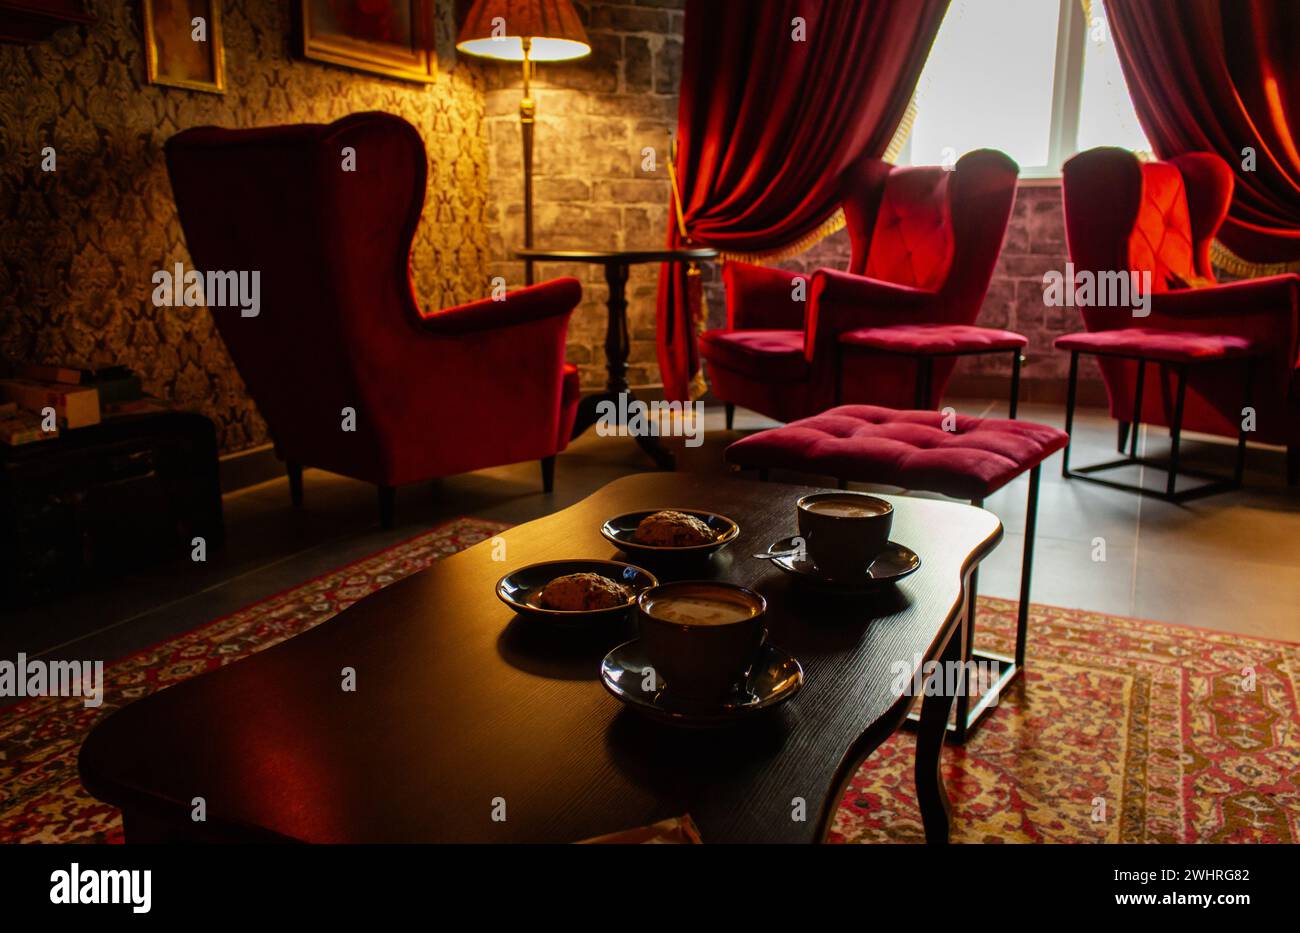 Rote Sessel mit Kaffeetassen auf dem Tisch in gemütlicher klassischer Einrichtung. Antikes Wohnzimmer mit roten Vorhängen und Sesseln. Schloss Hogwarts. Stockfoto